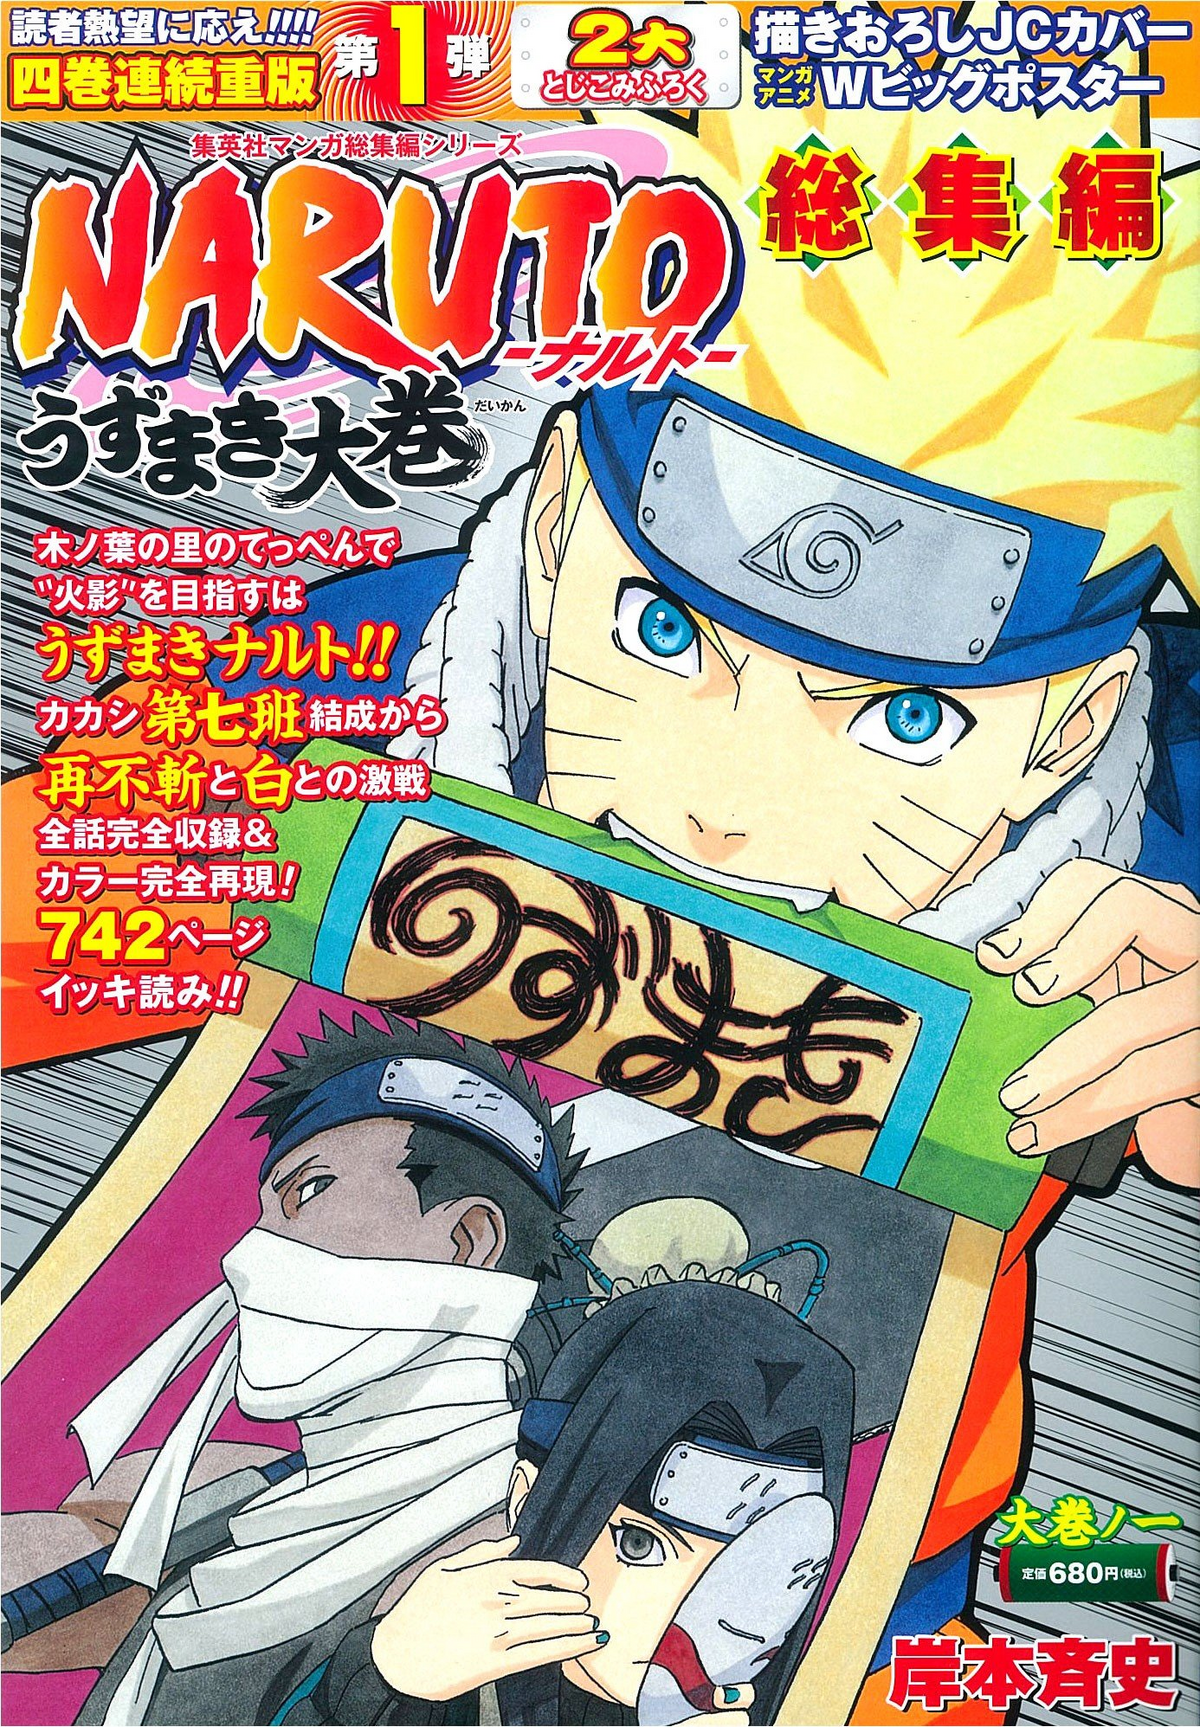 Naruto Vol. 35 – Nova Dupla Inimiga